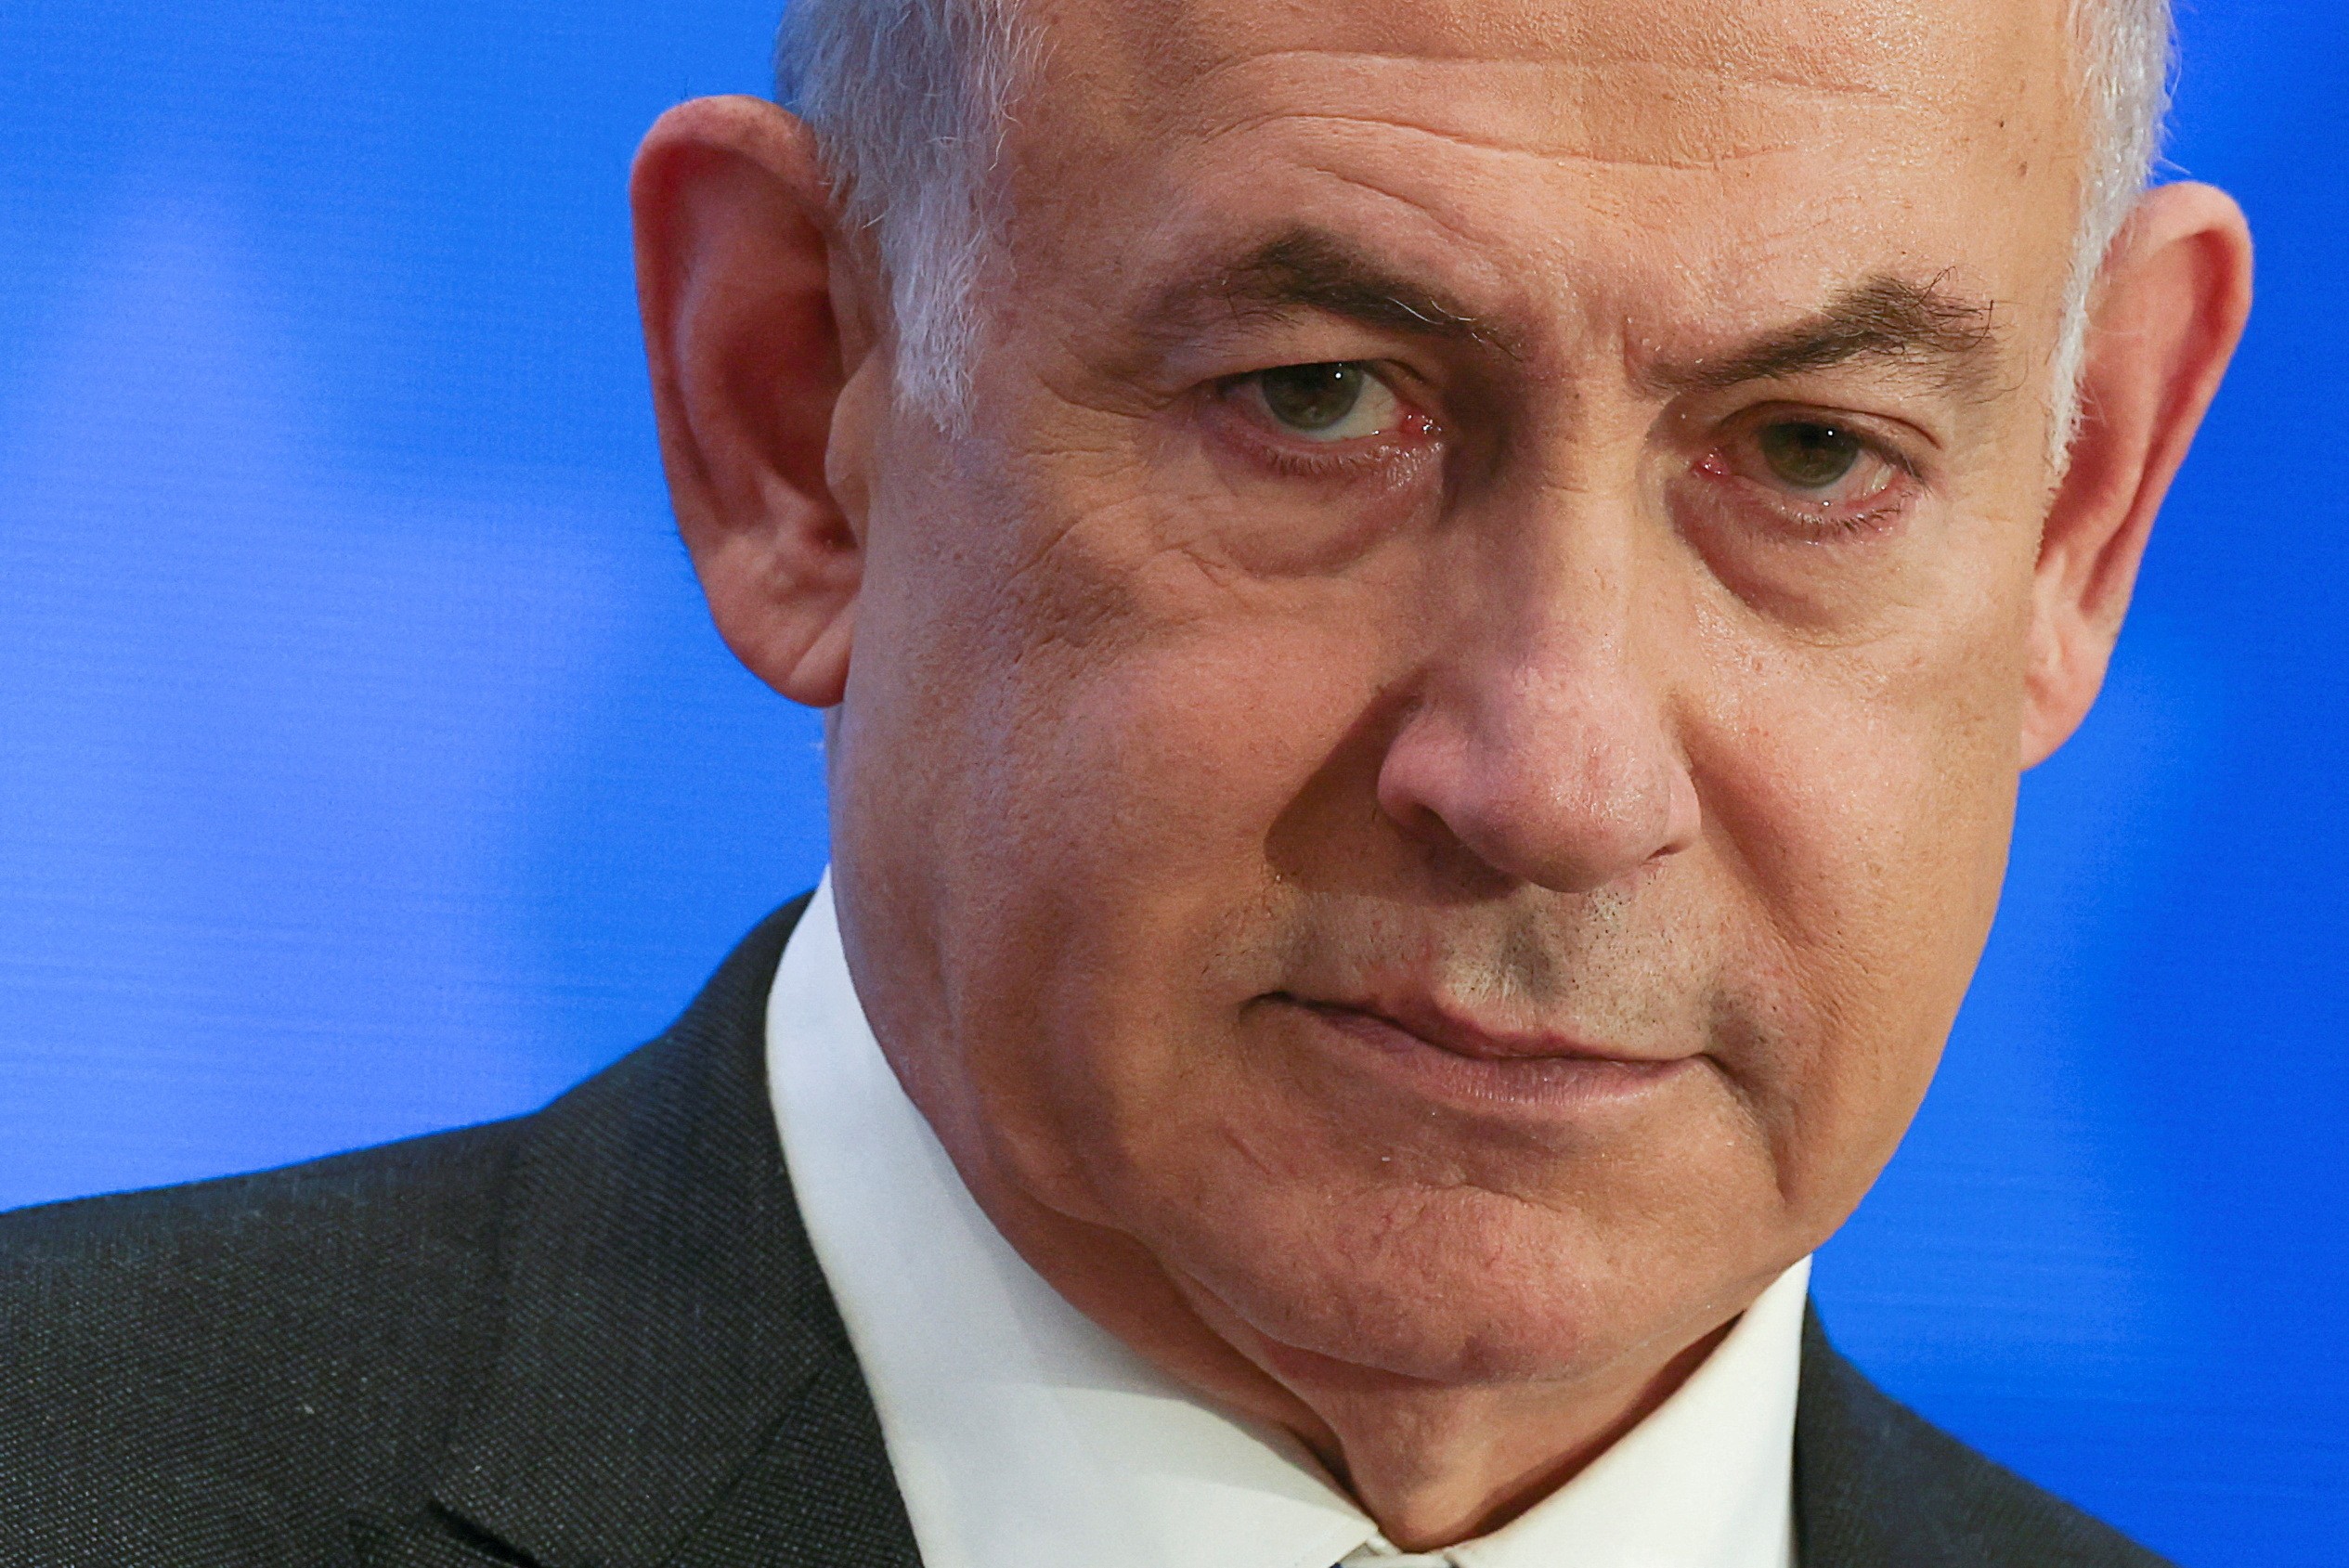 Netanyahu dissolve gabinete de guerra após saída de general centrista e pressão de ala radical do governo, diz agência